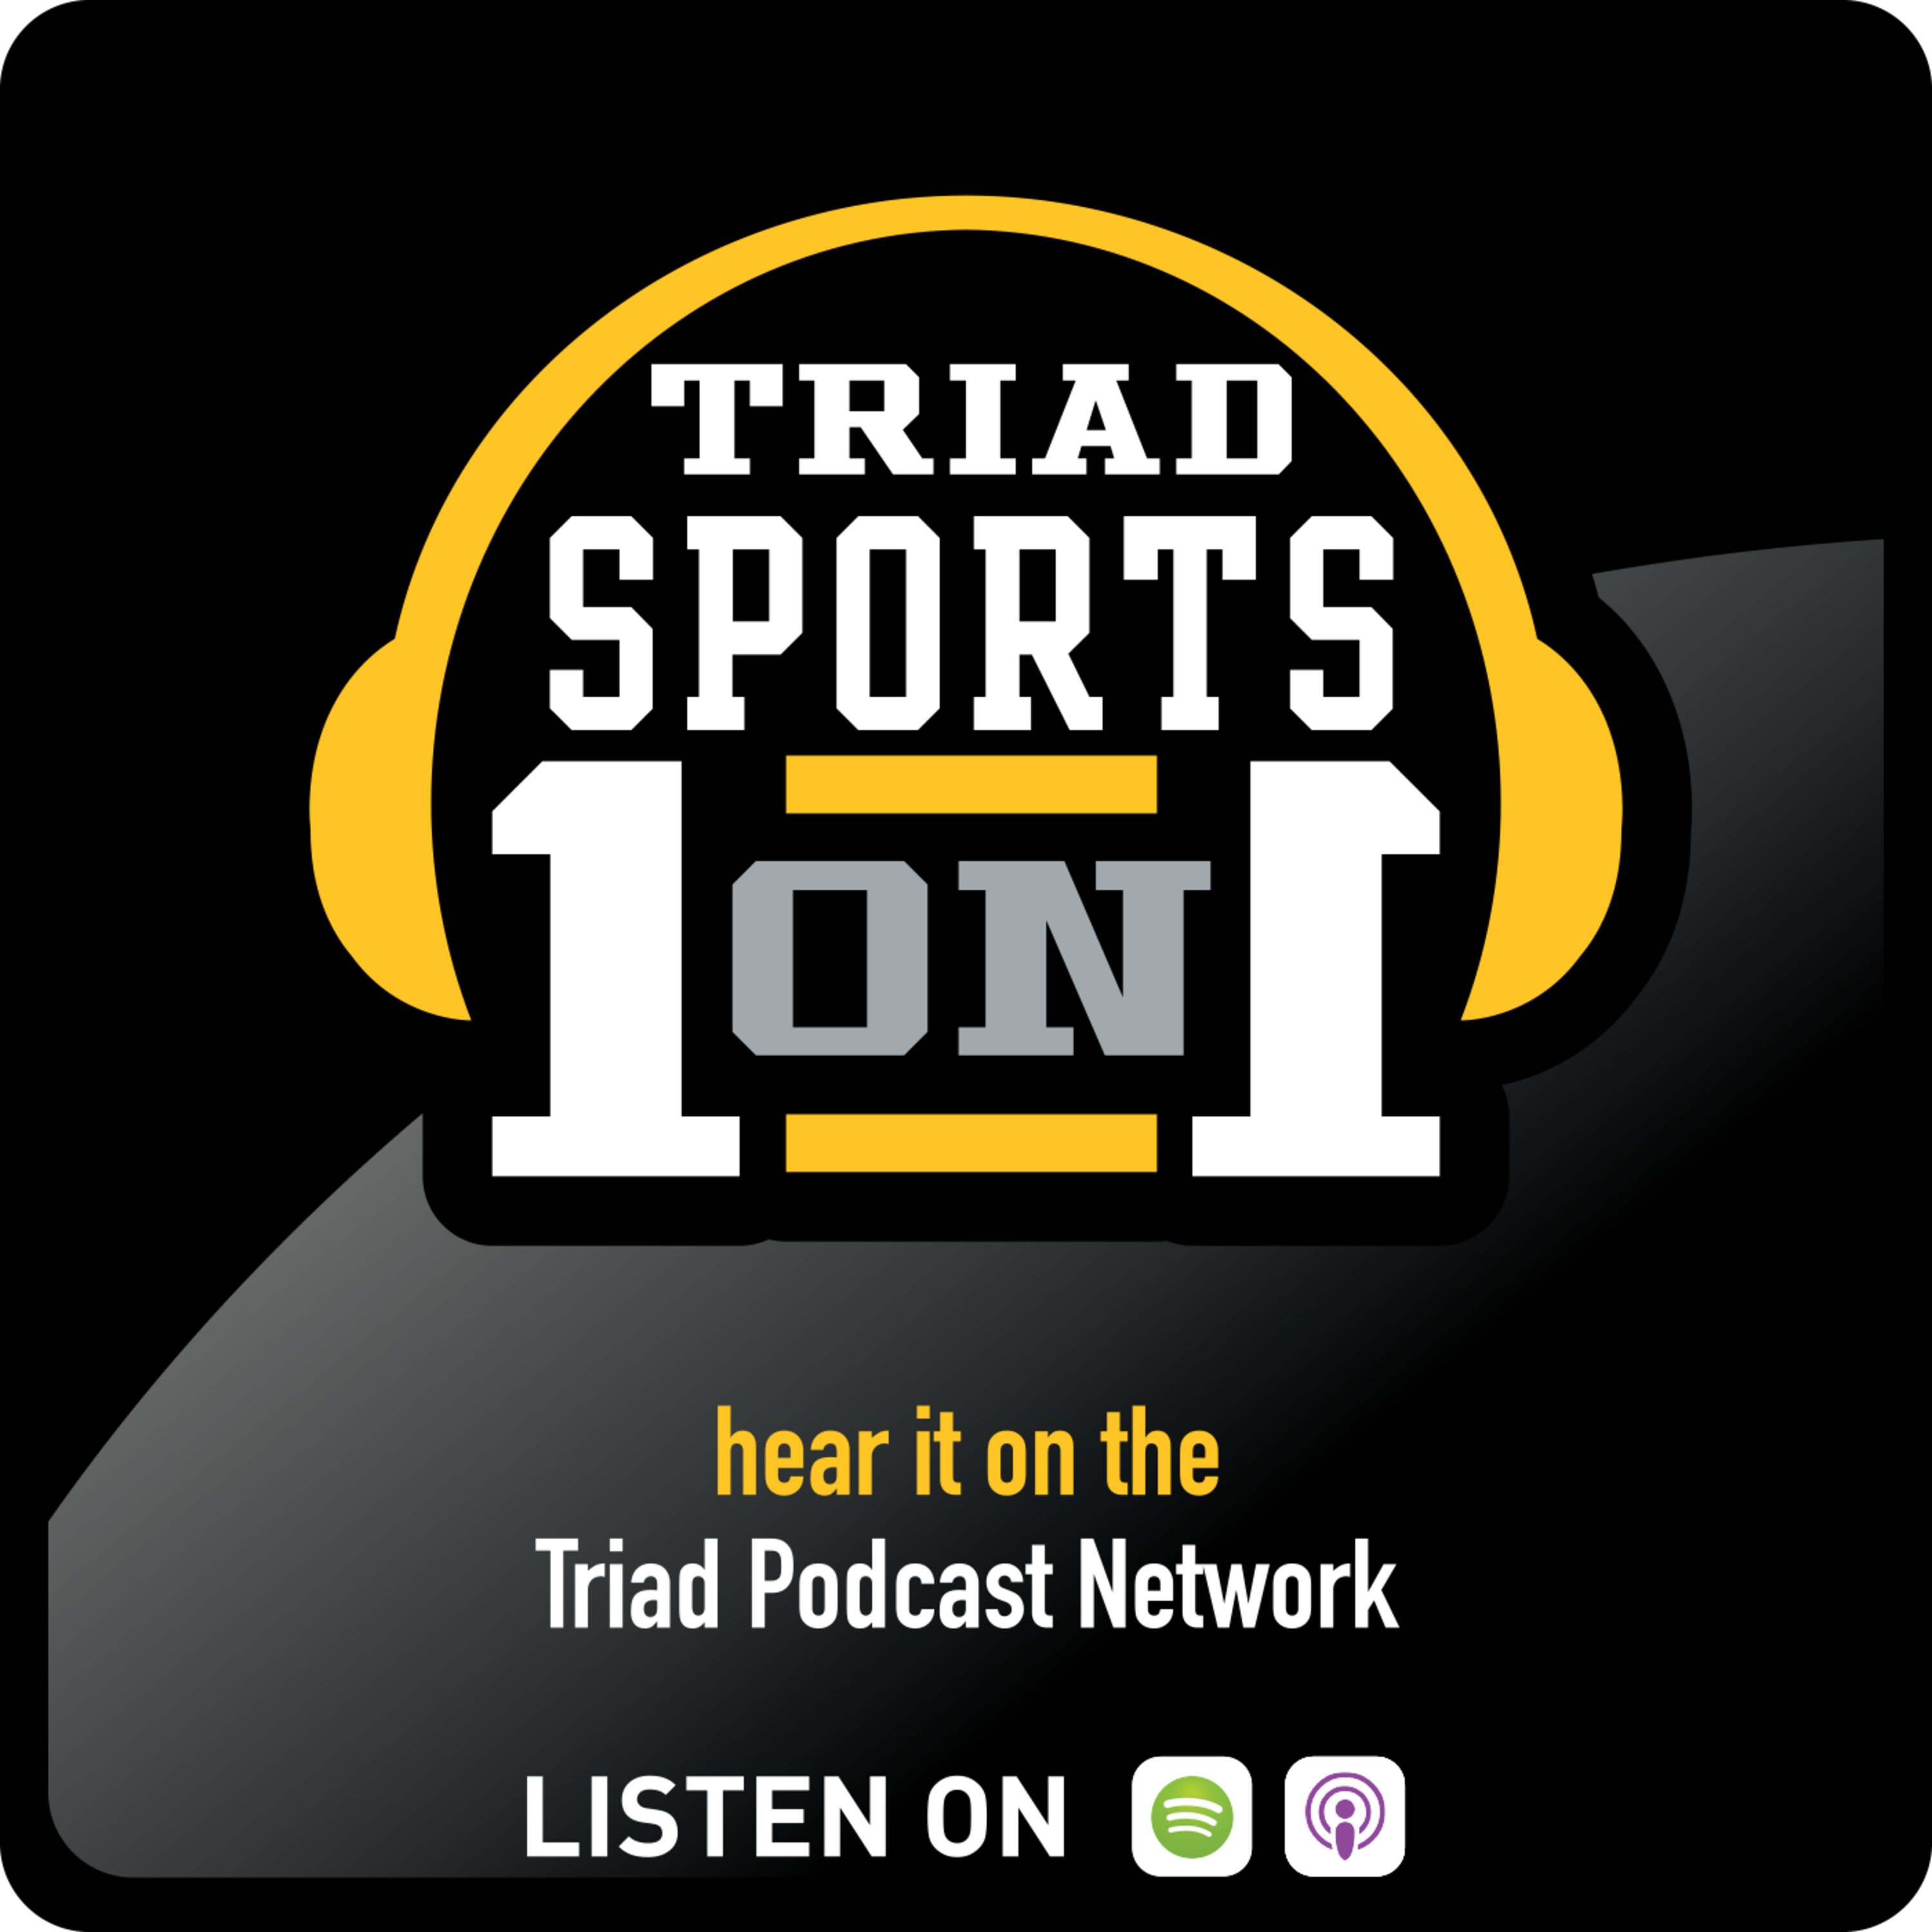 Triad Sports 1on1 - Gavin Hill, North Davidson HS